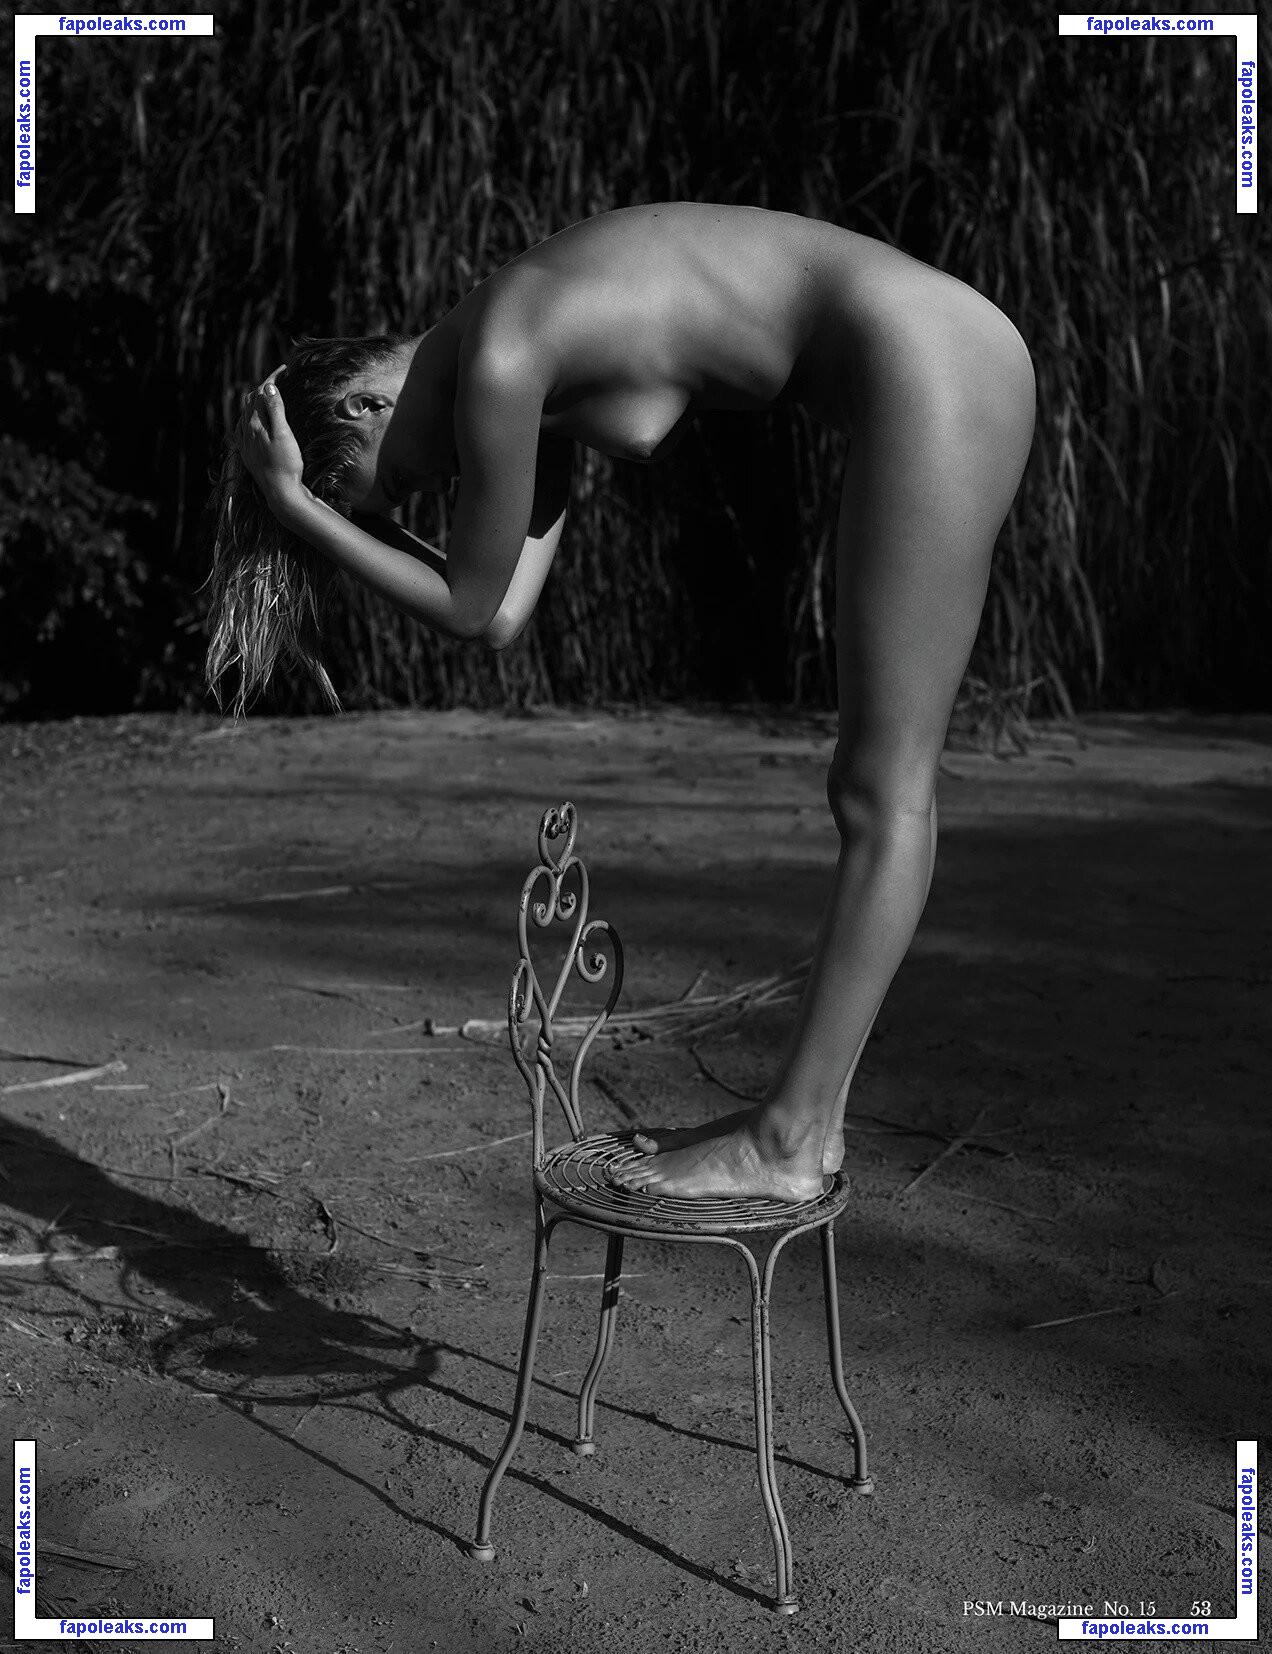 Nikki Hillier / nikki__hillier nude photo #0002 from OnlyFans